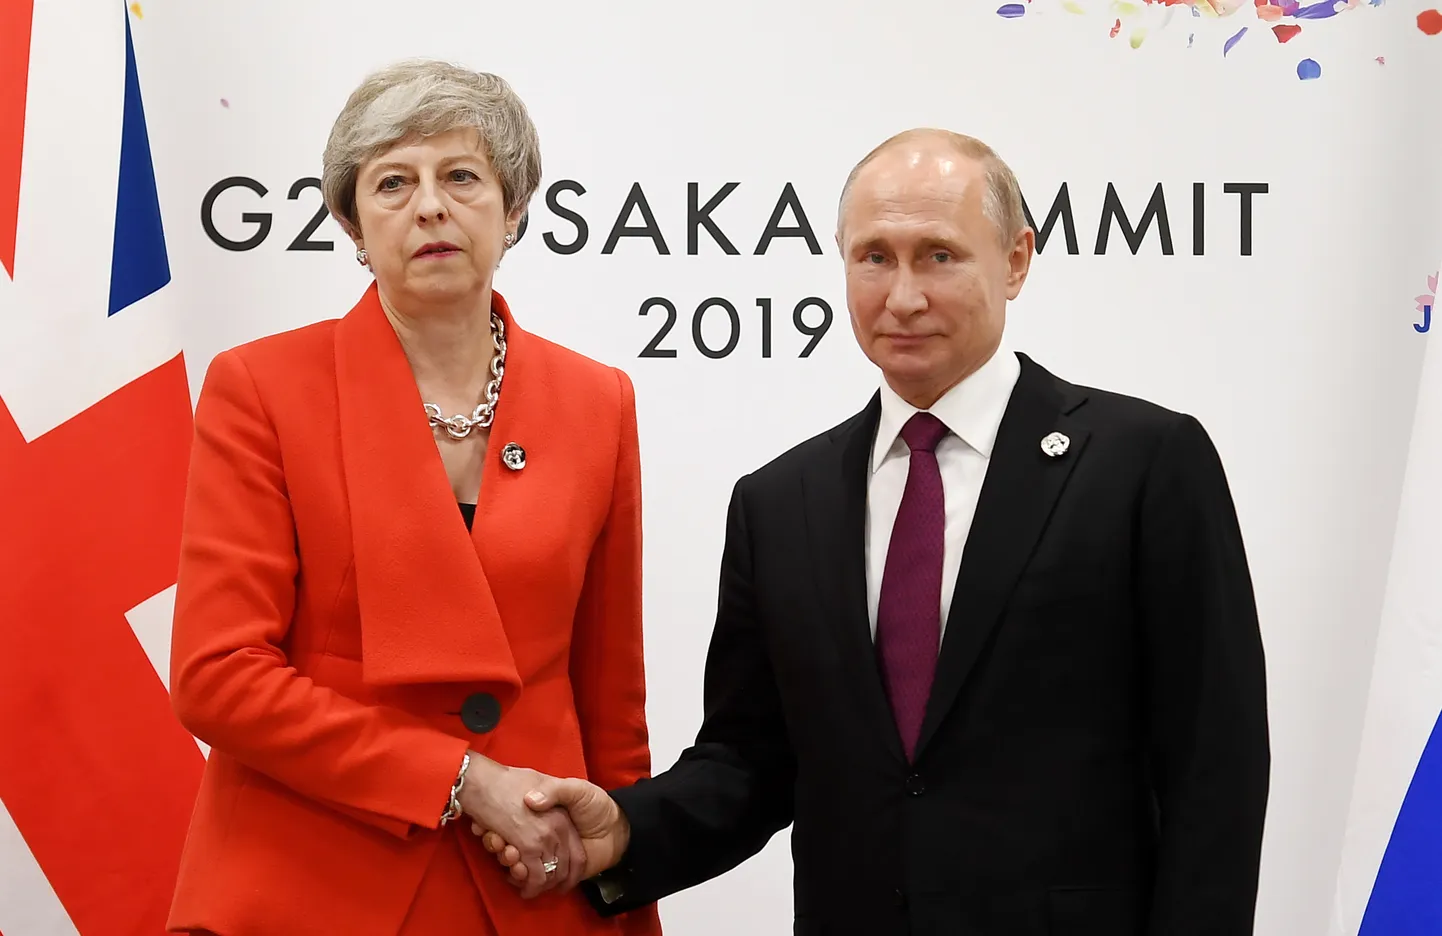 Lielbritānijas premjerministre Terēza Meja un Krievijas prezidents Vladimirs Putins G20 samitā Japānā.